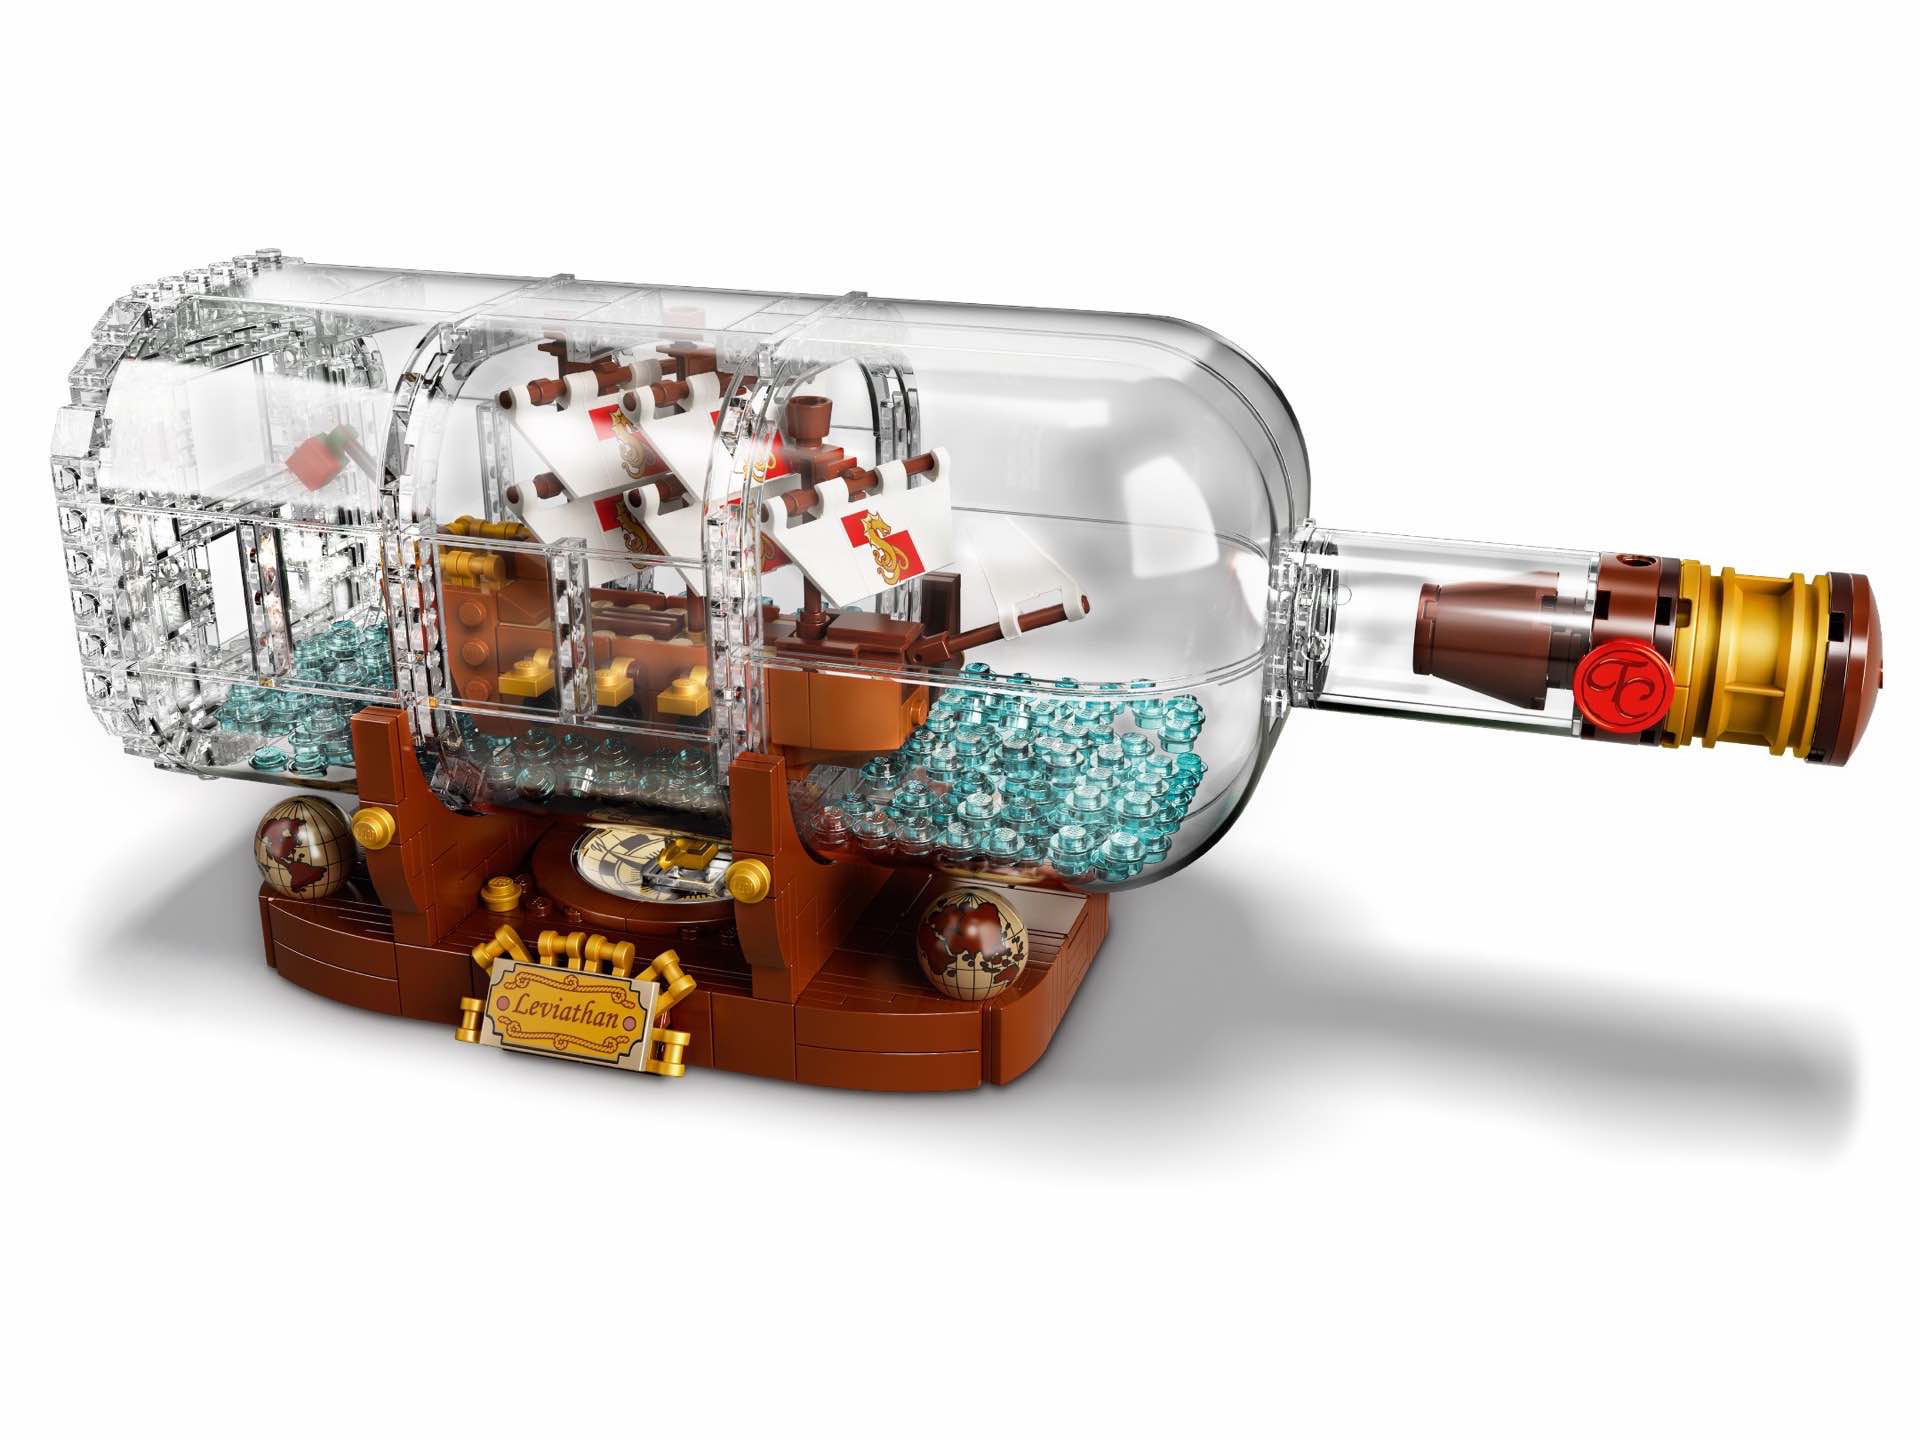 lego-ideas-ship-in-a-bottle-model-kit